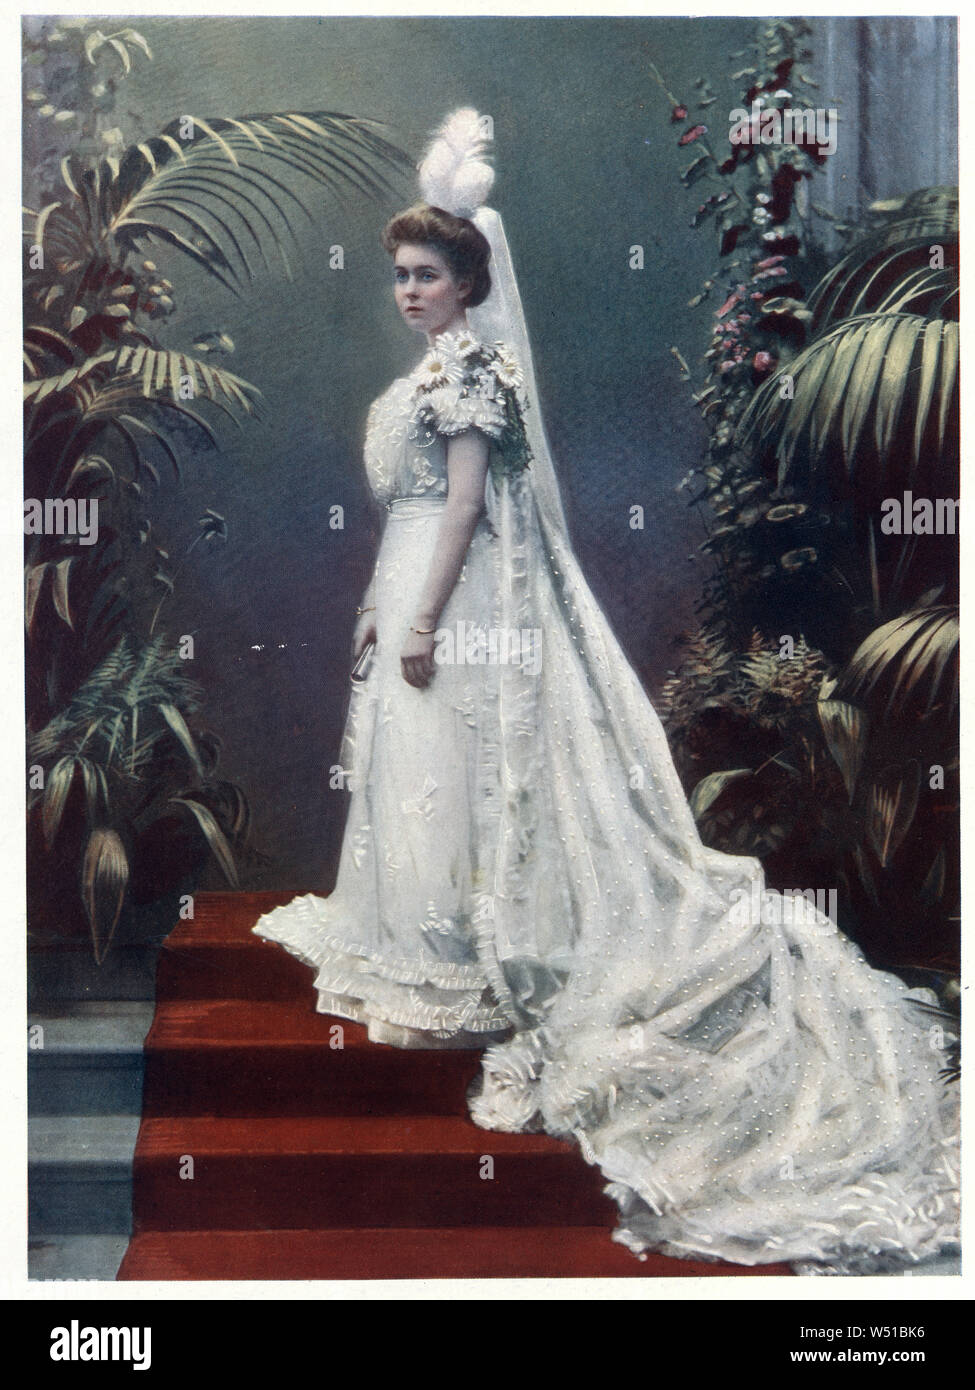 La principessa Margaret di Connaught è stata la Principessa di Svezia e Duchessa di Scania come la prima moglie del futuro Re Gustavo VI Adolfo. Era la figlia maggiore del principe Arthur, duca di Connaught, terzo figlio della Regina Victoria del Regno Unito, e sua moglie la Principessa Luisa Margherita di Prussia. Foto Stock